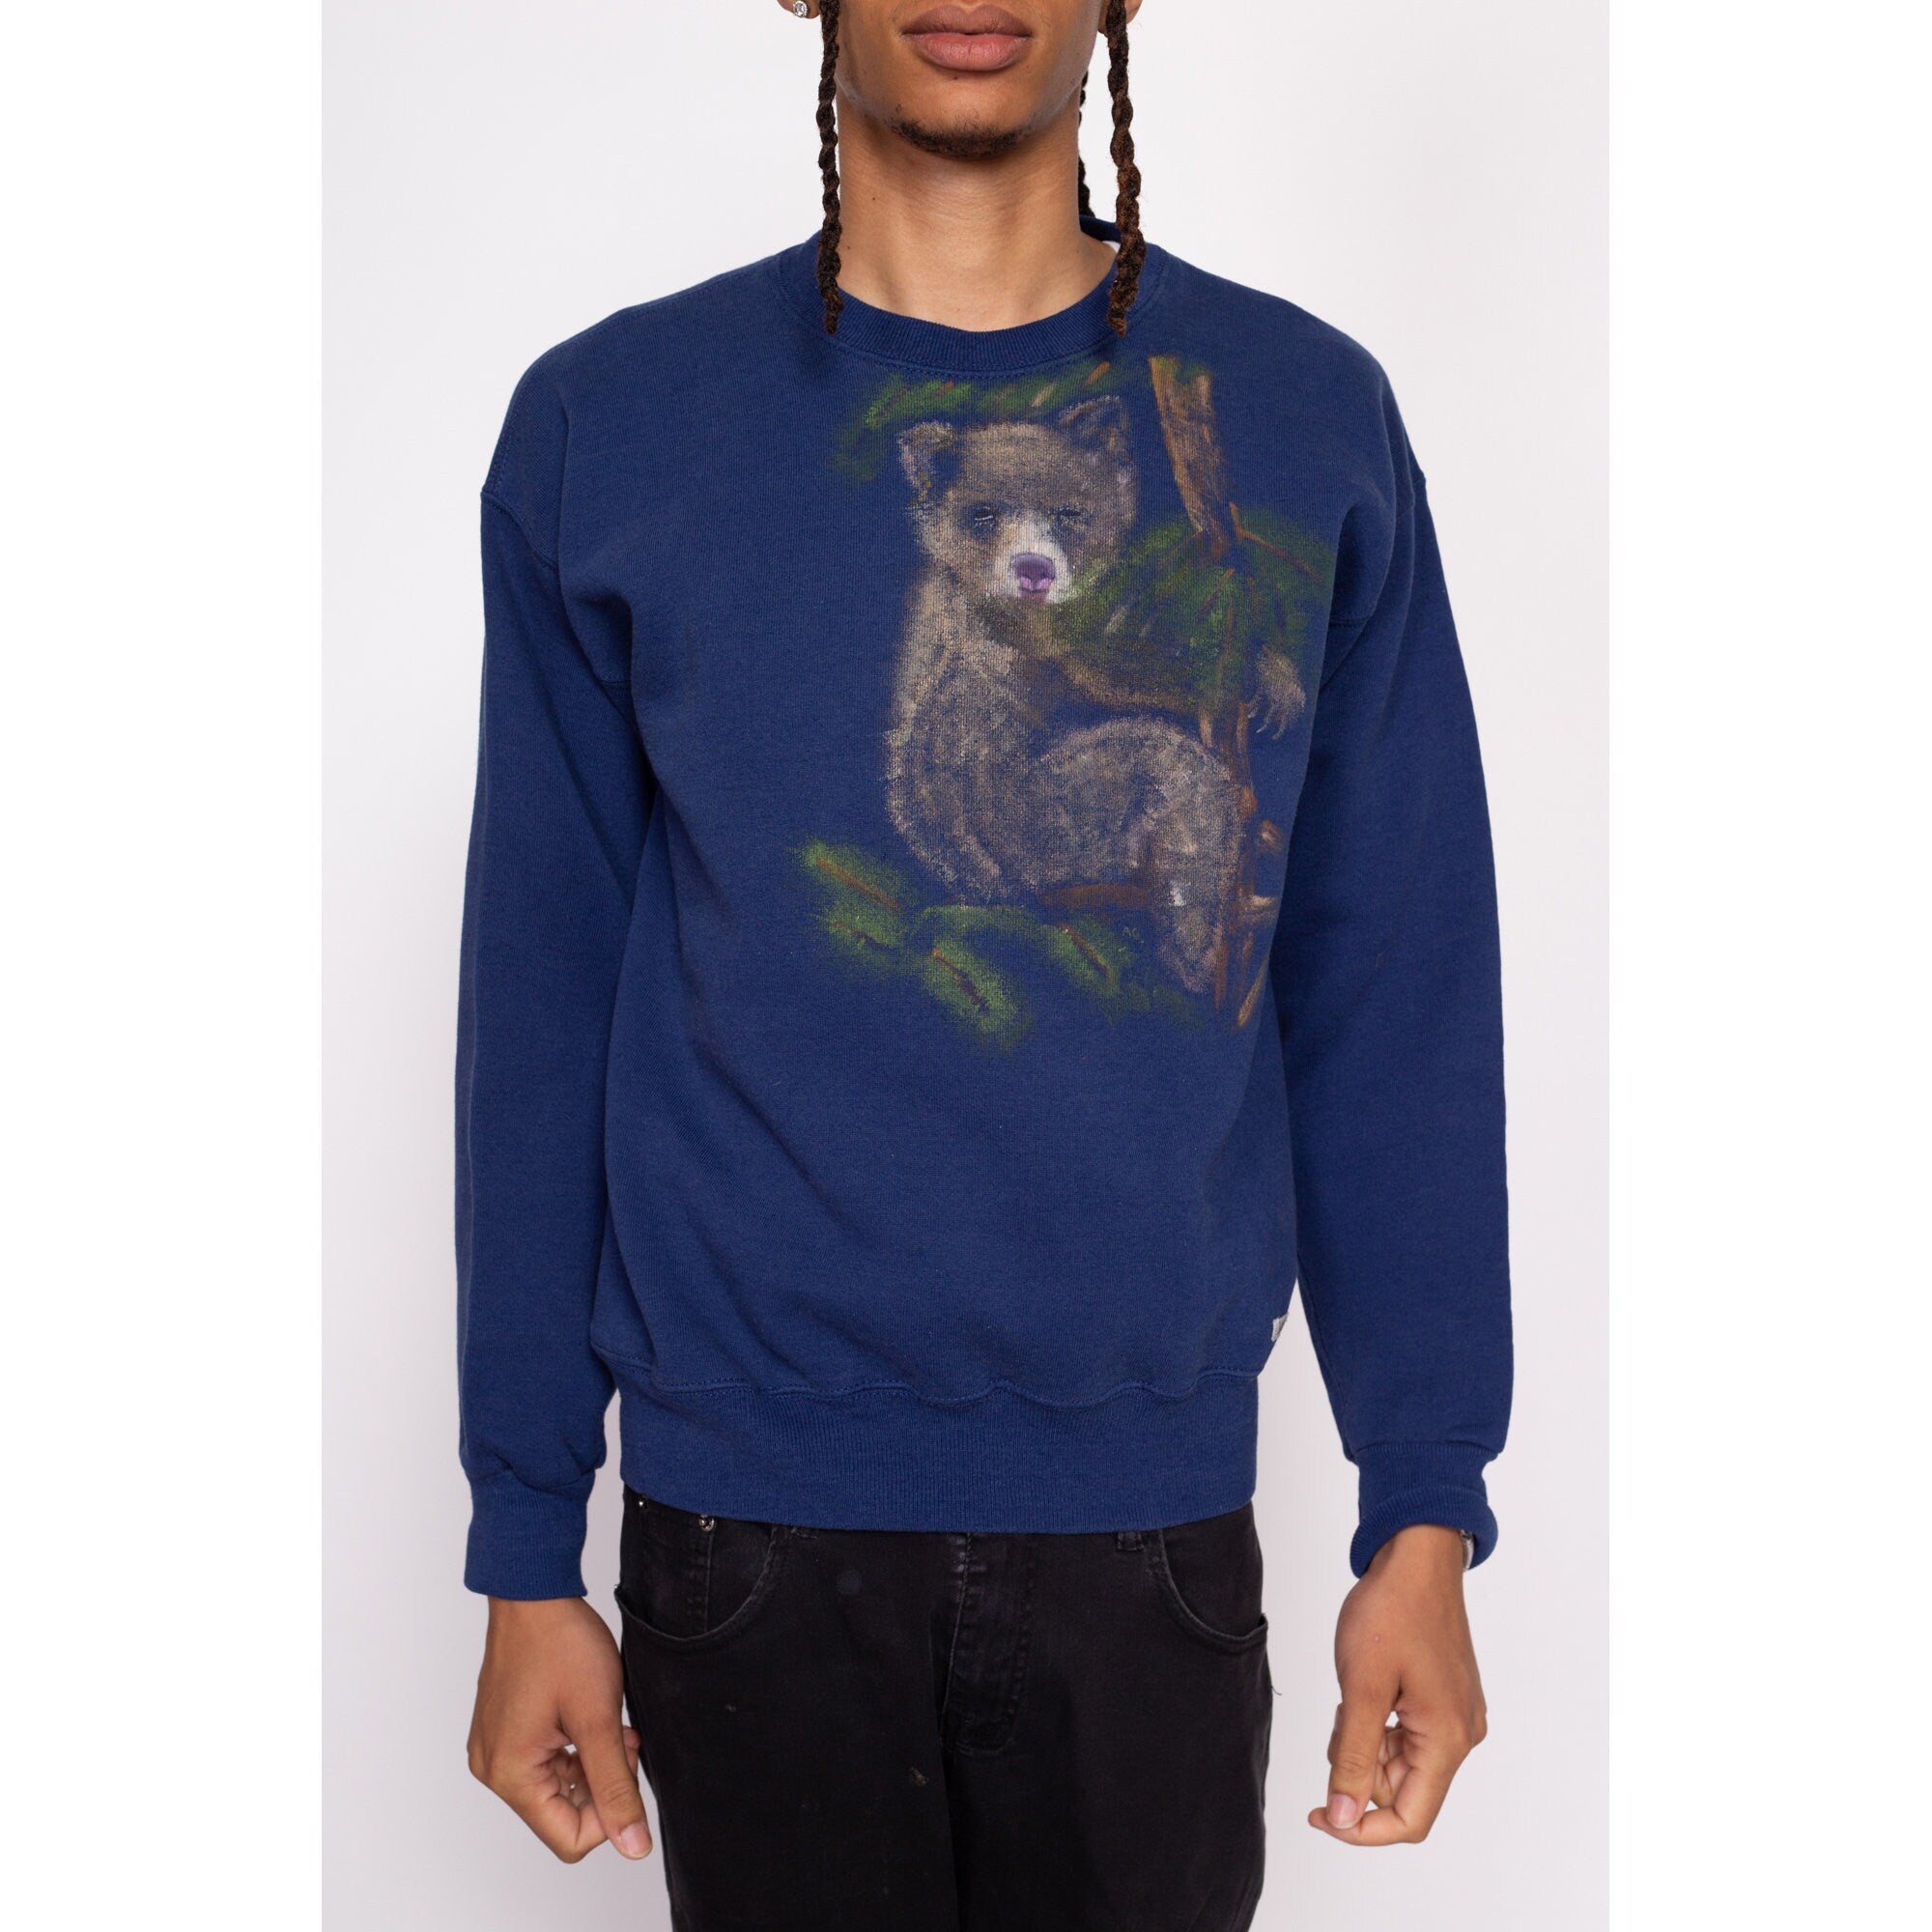 90s Bear Cub Painted Sweatshirt - Men's Medium, Women's Large